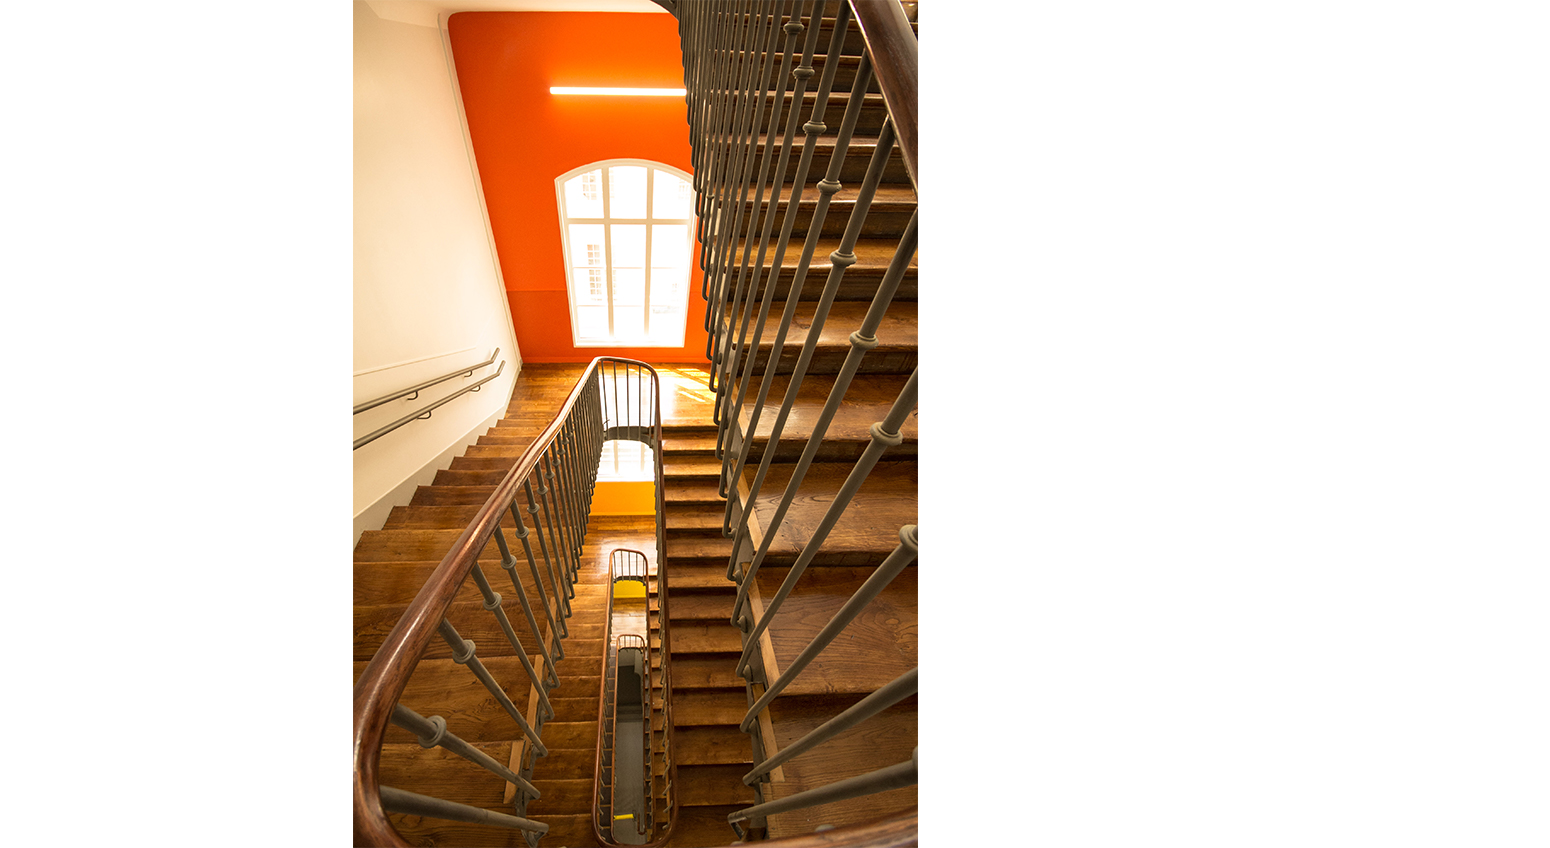 Cazenove Architecte Ecole La Rochefoucauld Rue Cler Circulation Escalier Couleur Paris 7 006